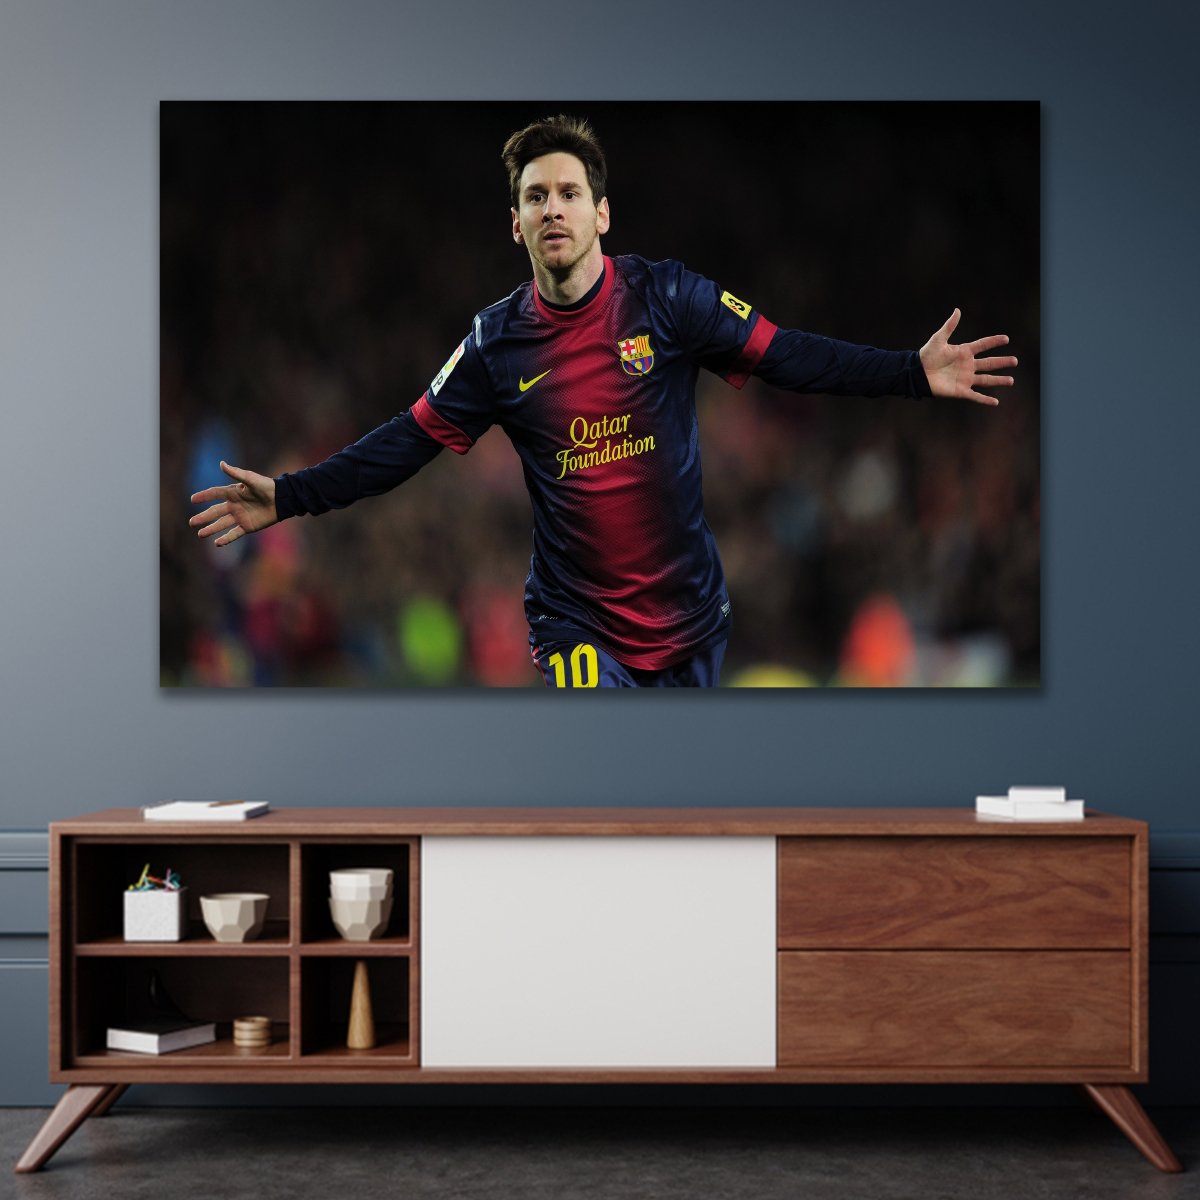 Tranh treo tường cầu thủ bóng đá Messi